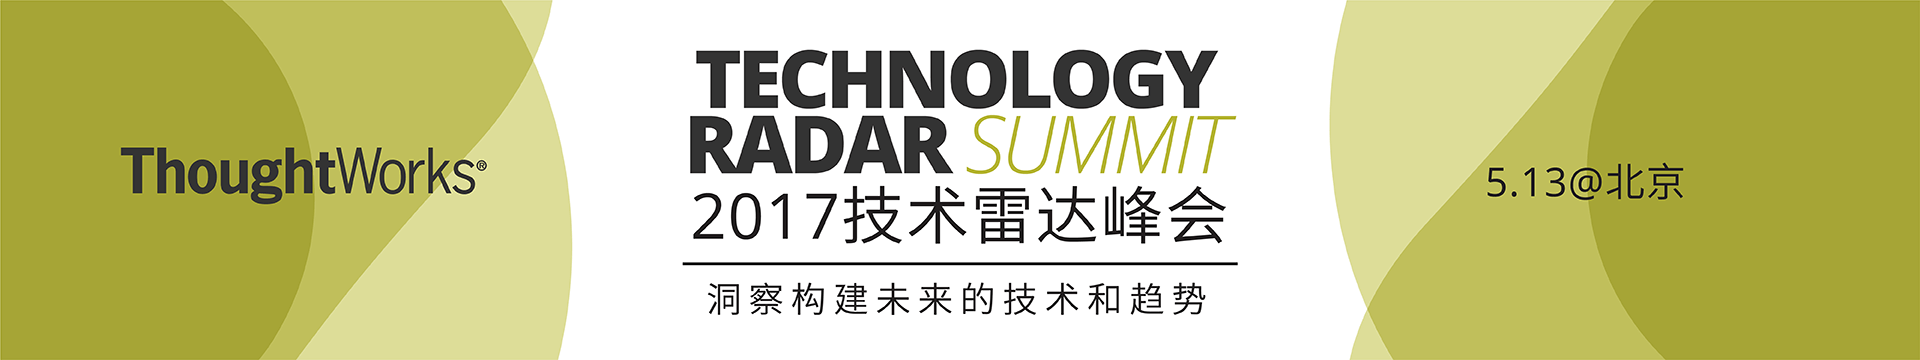 2017技术雷达峰会